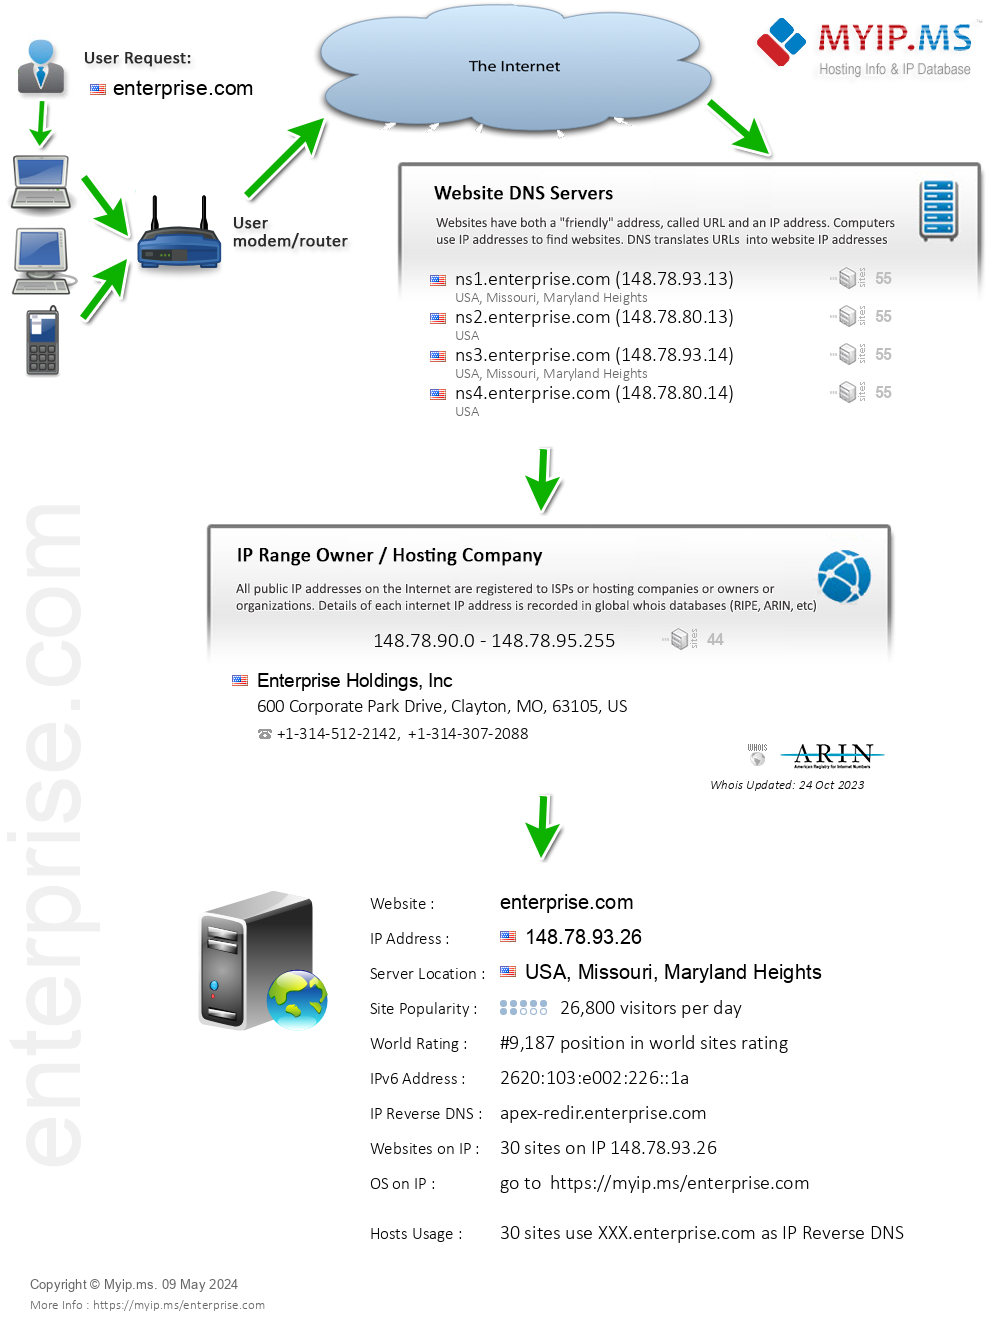 Enterprise.com - Website Hosting Visual IP Diagram